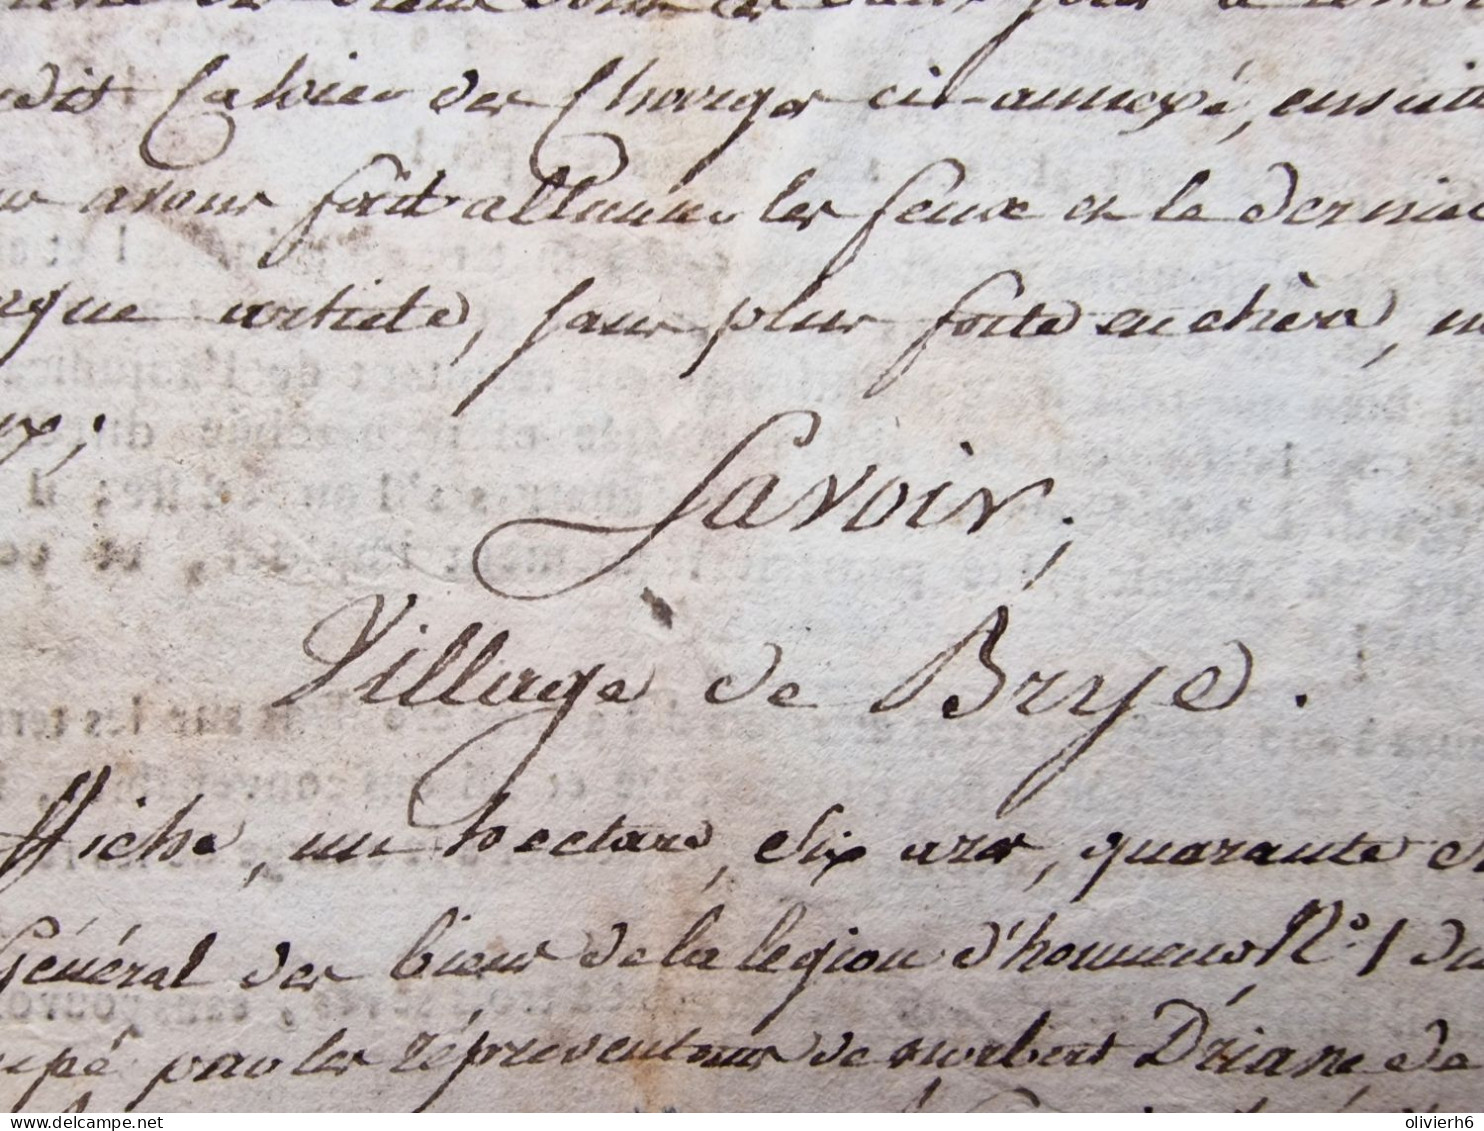 VP BELGIQUE (V1618) MONS (3 vues) DOTATION DE LA LEGION D'HONNEUR Charleroi Jemappe Gosselies Bry 1813?